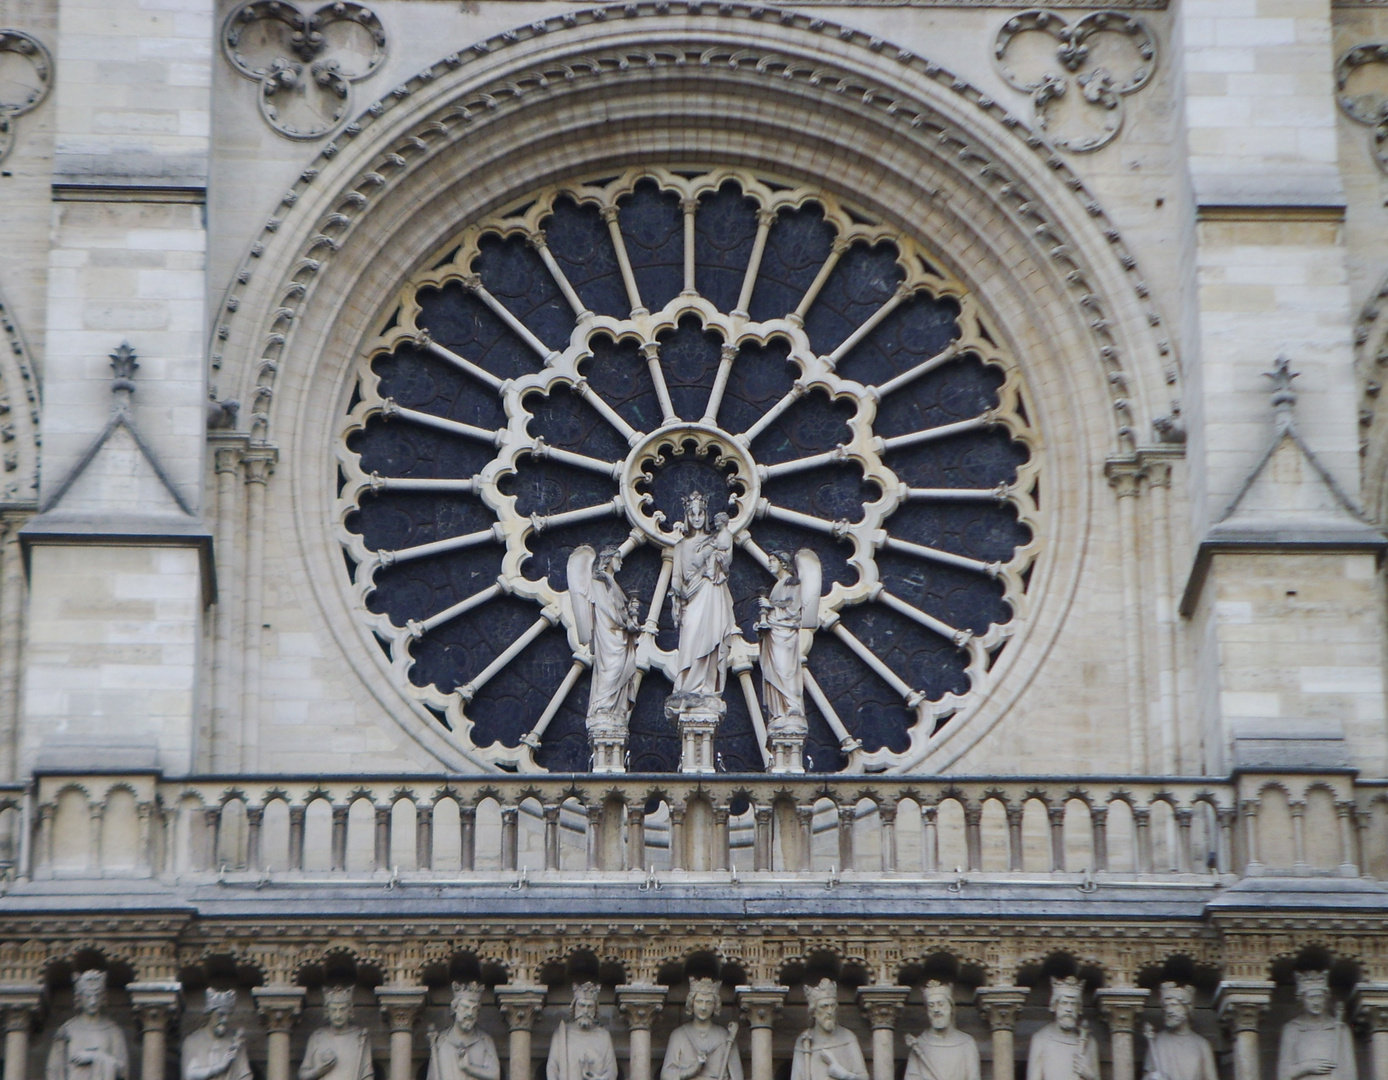    "Cathédrale de Notre Dame de Paris"